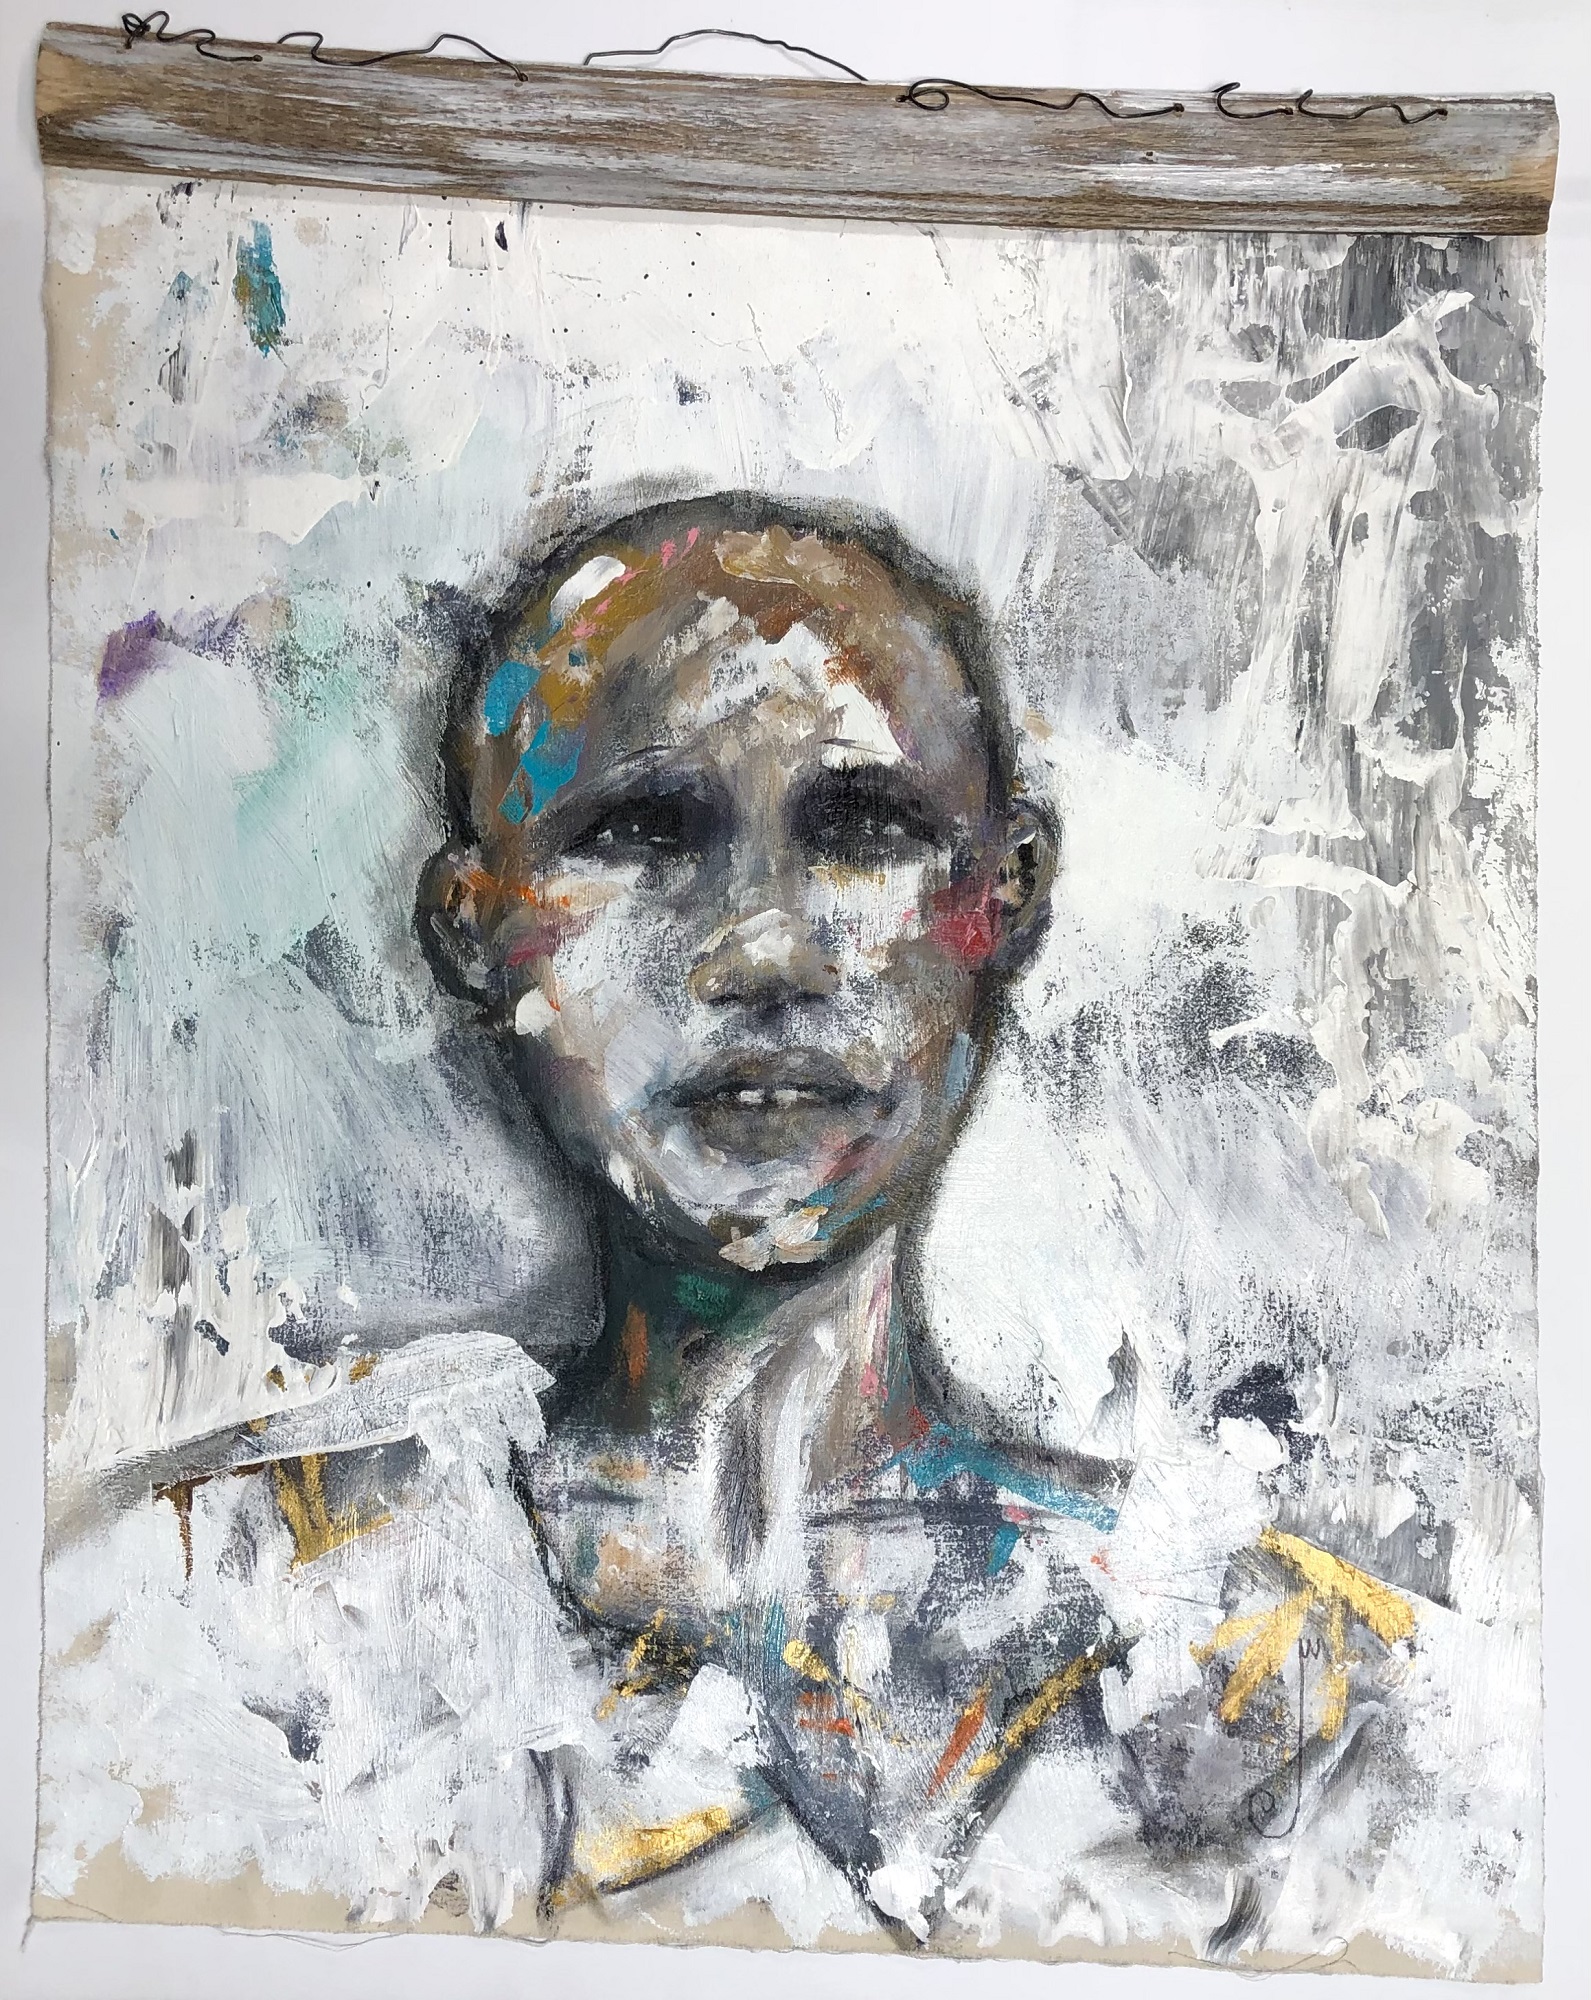 Jocelyn K Woodson, “Male (White Backgroud)”, Acrylic on canvas